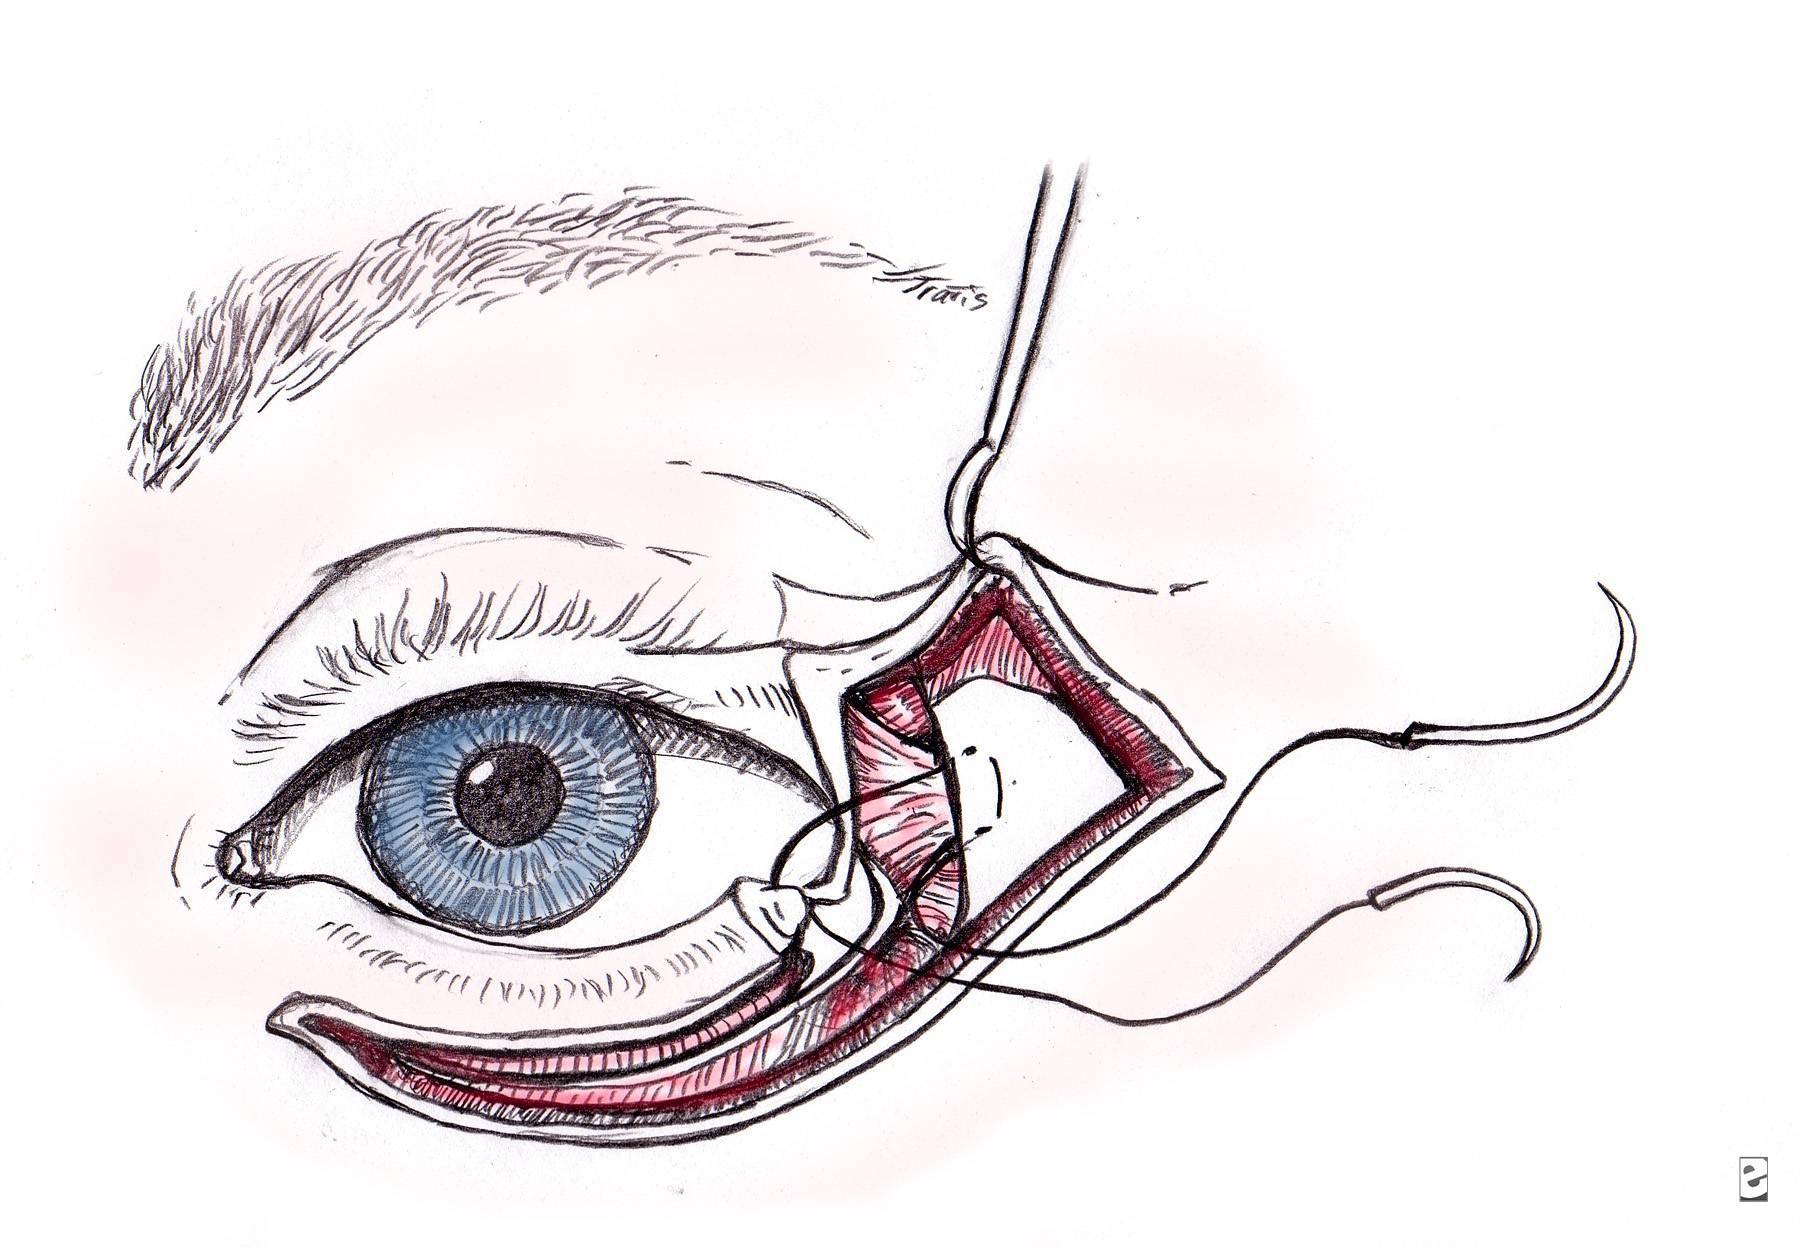 Внешние уголки глаз красные - вопрос офтальмологу - 03 онлайн